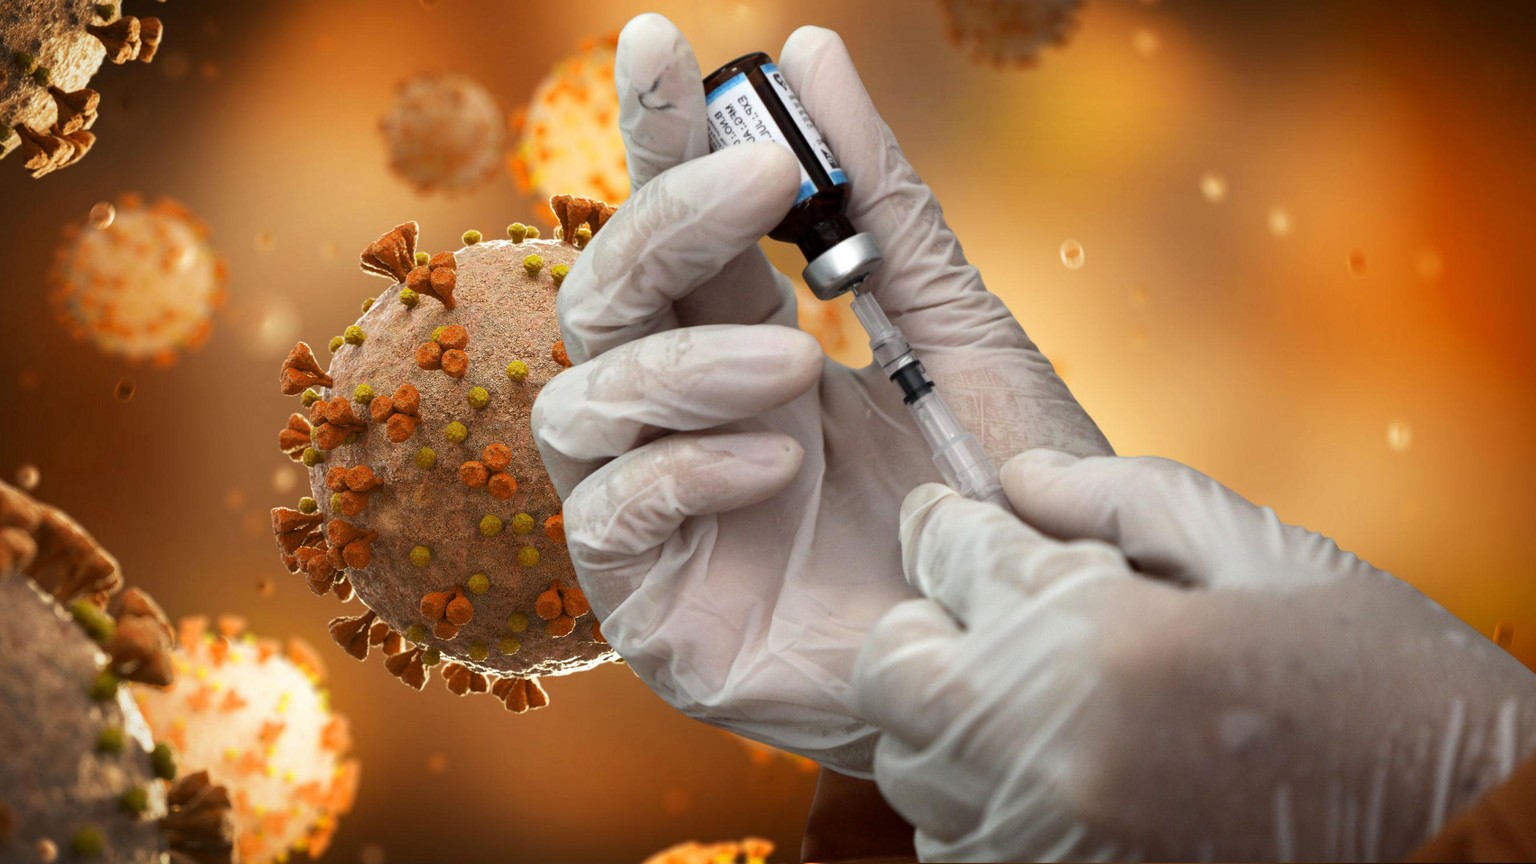 Die Unternehmen Pfizer und Biontech gehen davon aus, dass noch dieses Jahr 50 Millionen Impfdosen hergestellt werden können.